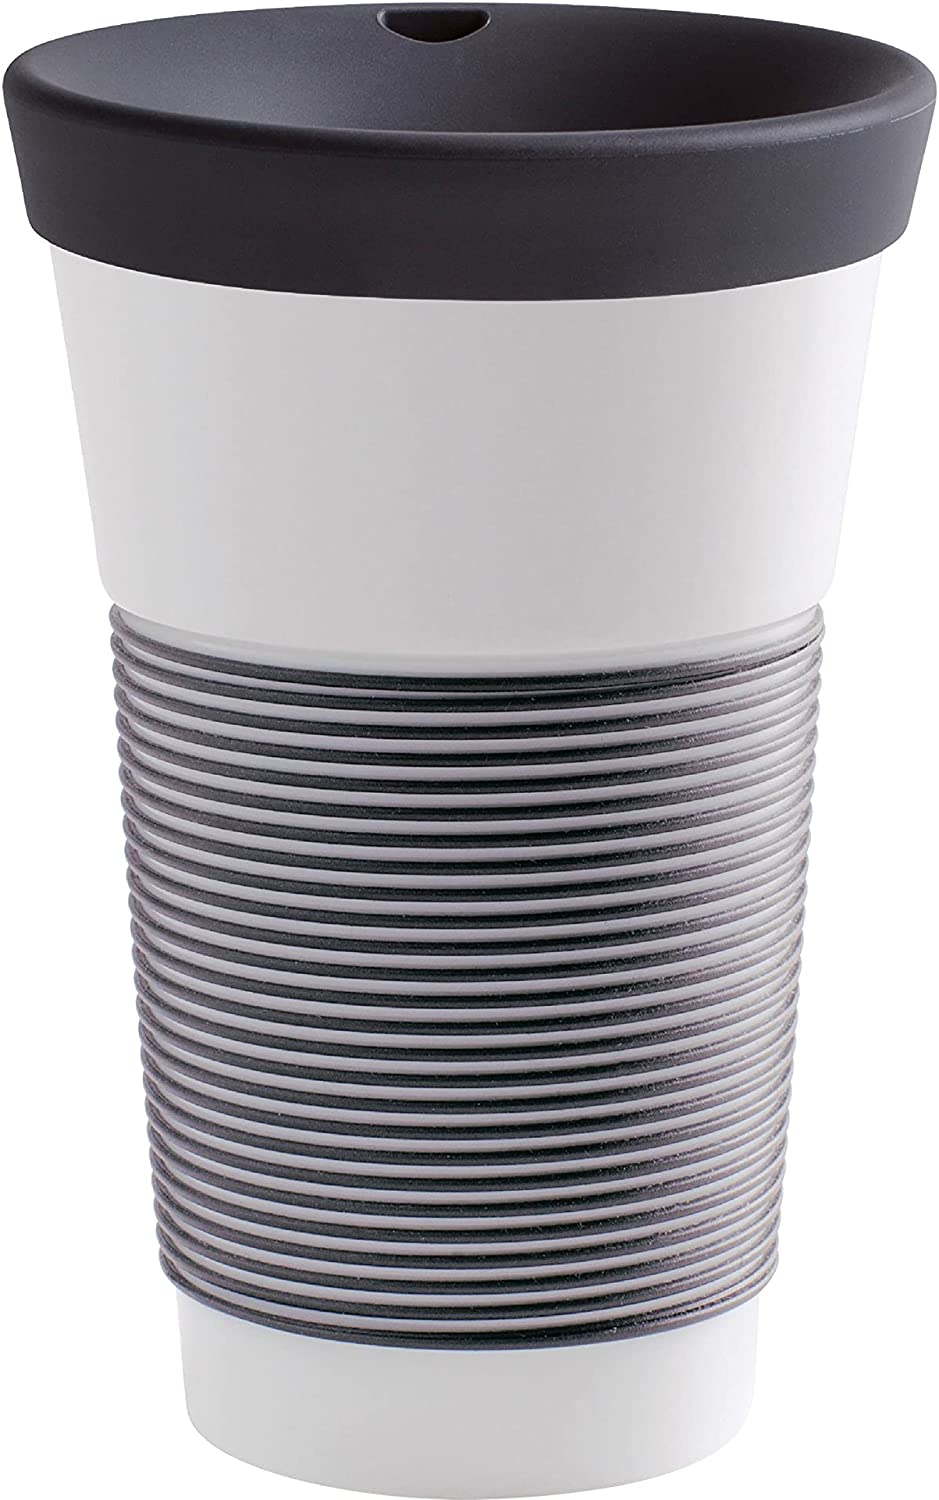 Kahla Cupit mug, 0.23 litre, with a lid, coffee to go style mug, Pro Eco, porcelain